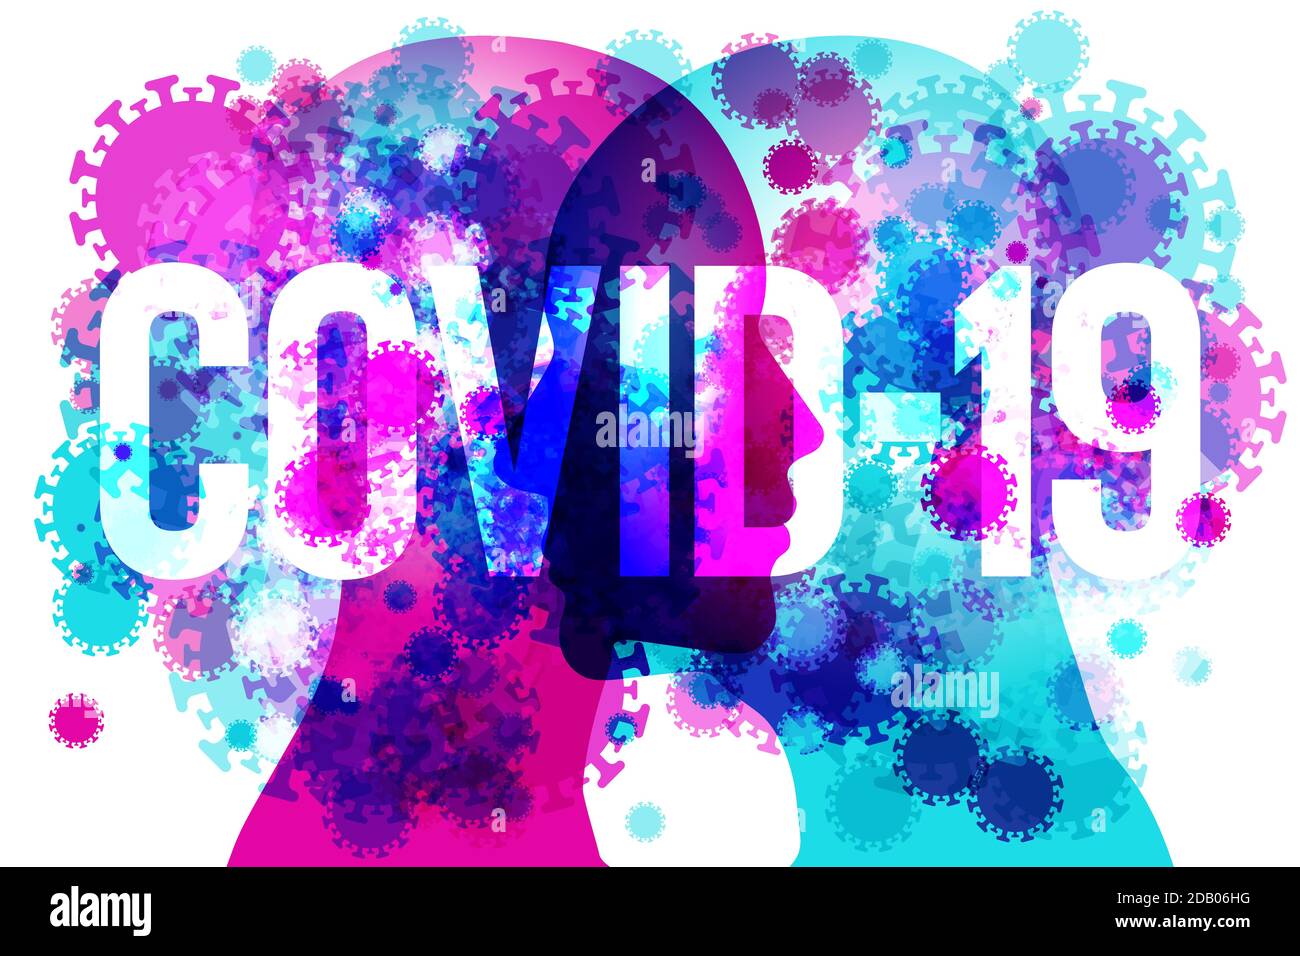 2 persona faccia a faccia silhouette laterale, sovrapposta con varie dimensioni di coronavirus trasparente sovrapposto. Il testo "COVID-19" viene sovrapposto. Illustrazione Vettoriale